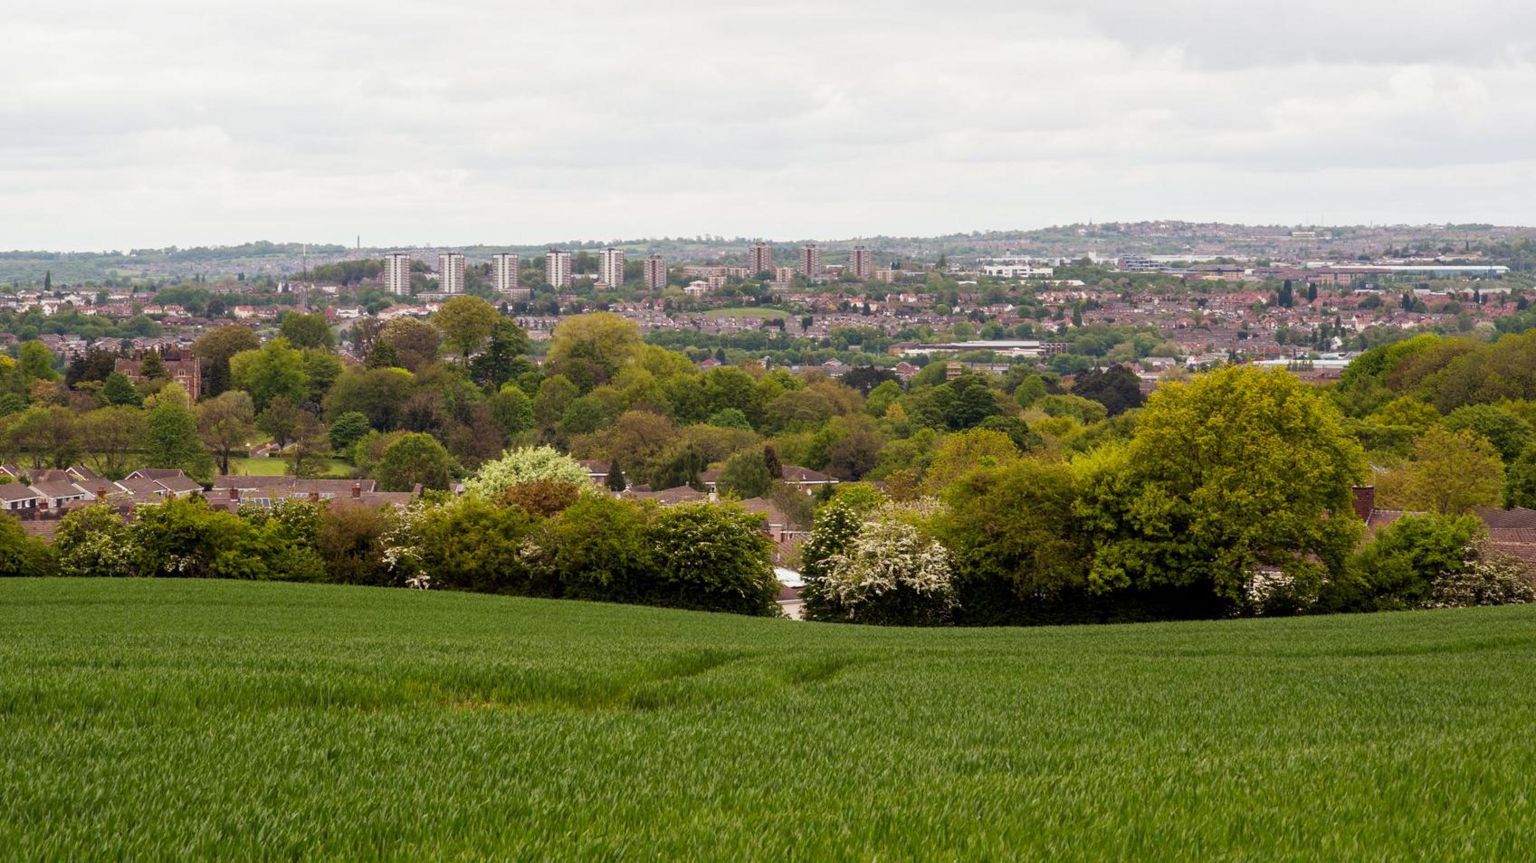 Stourbridge in the metropolitan borough of Dudley